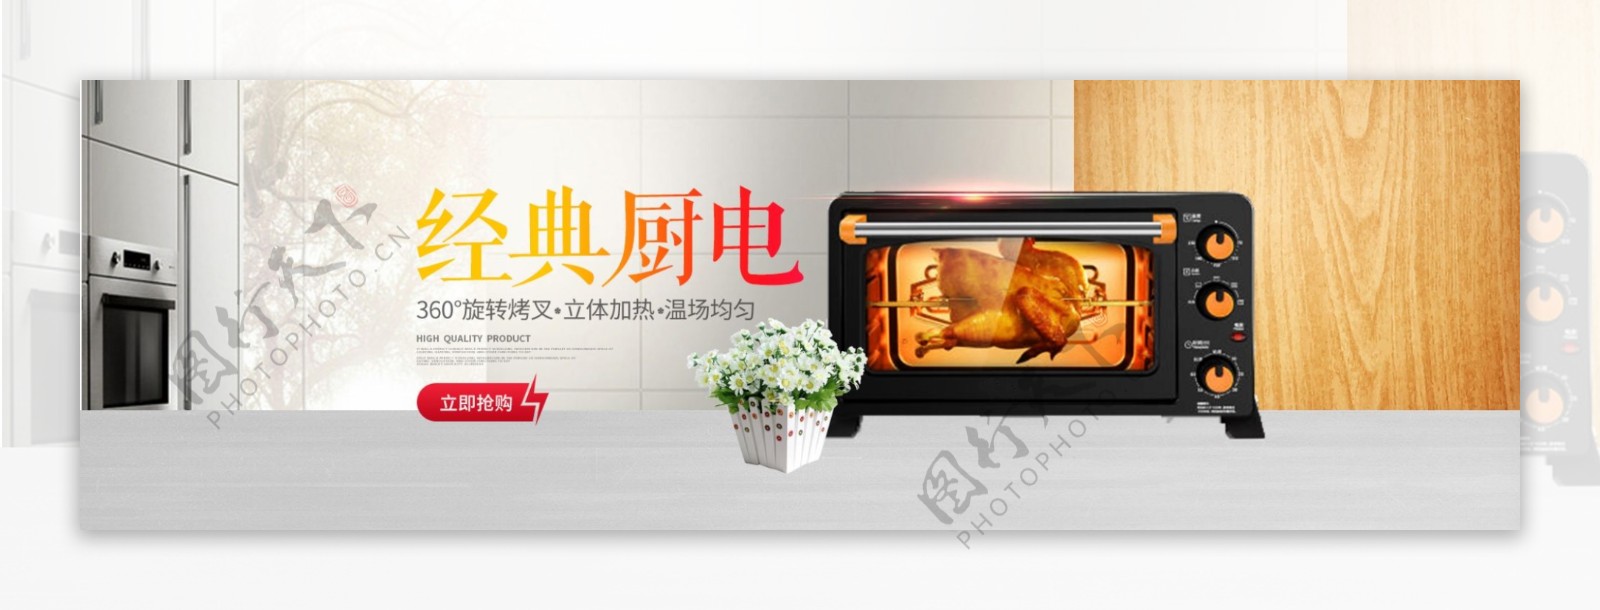 简约电烤箱电器全屏海报